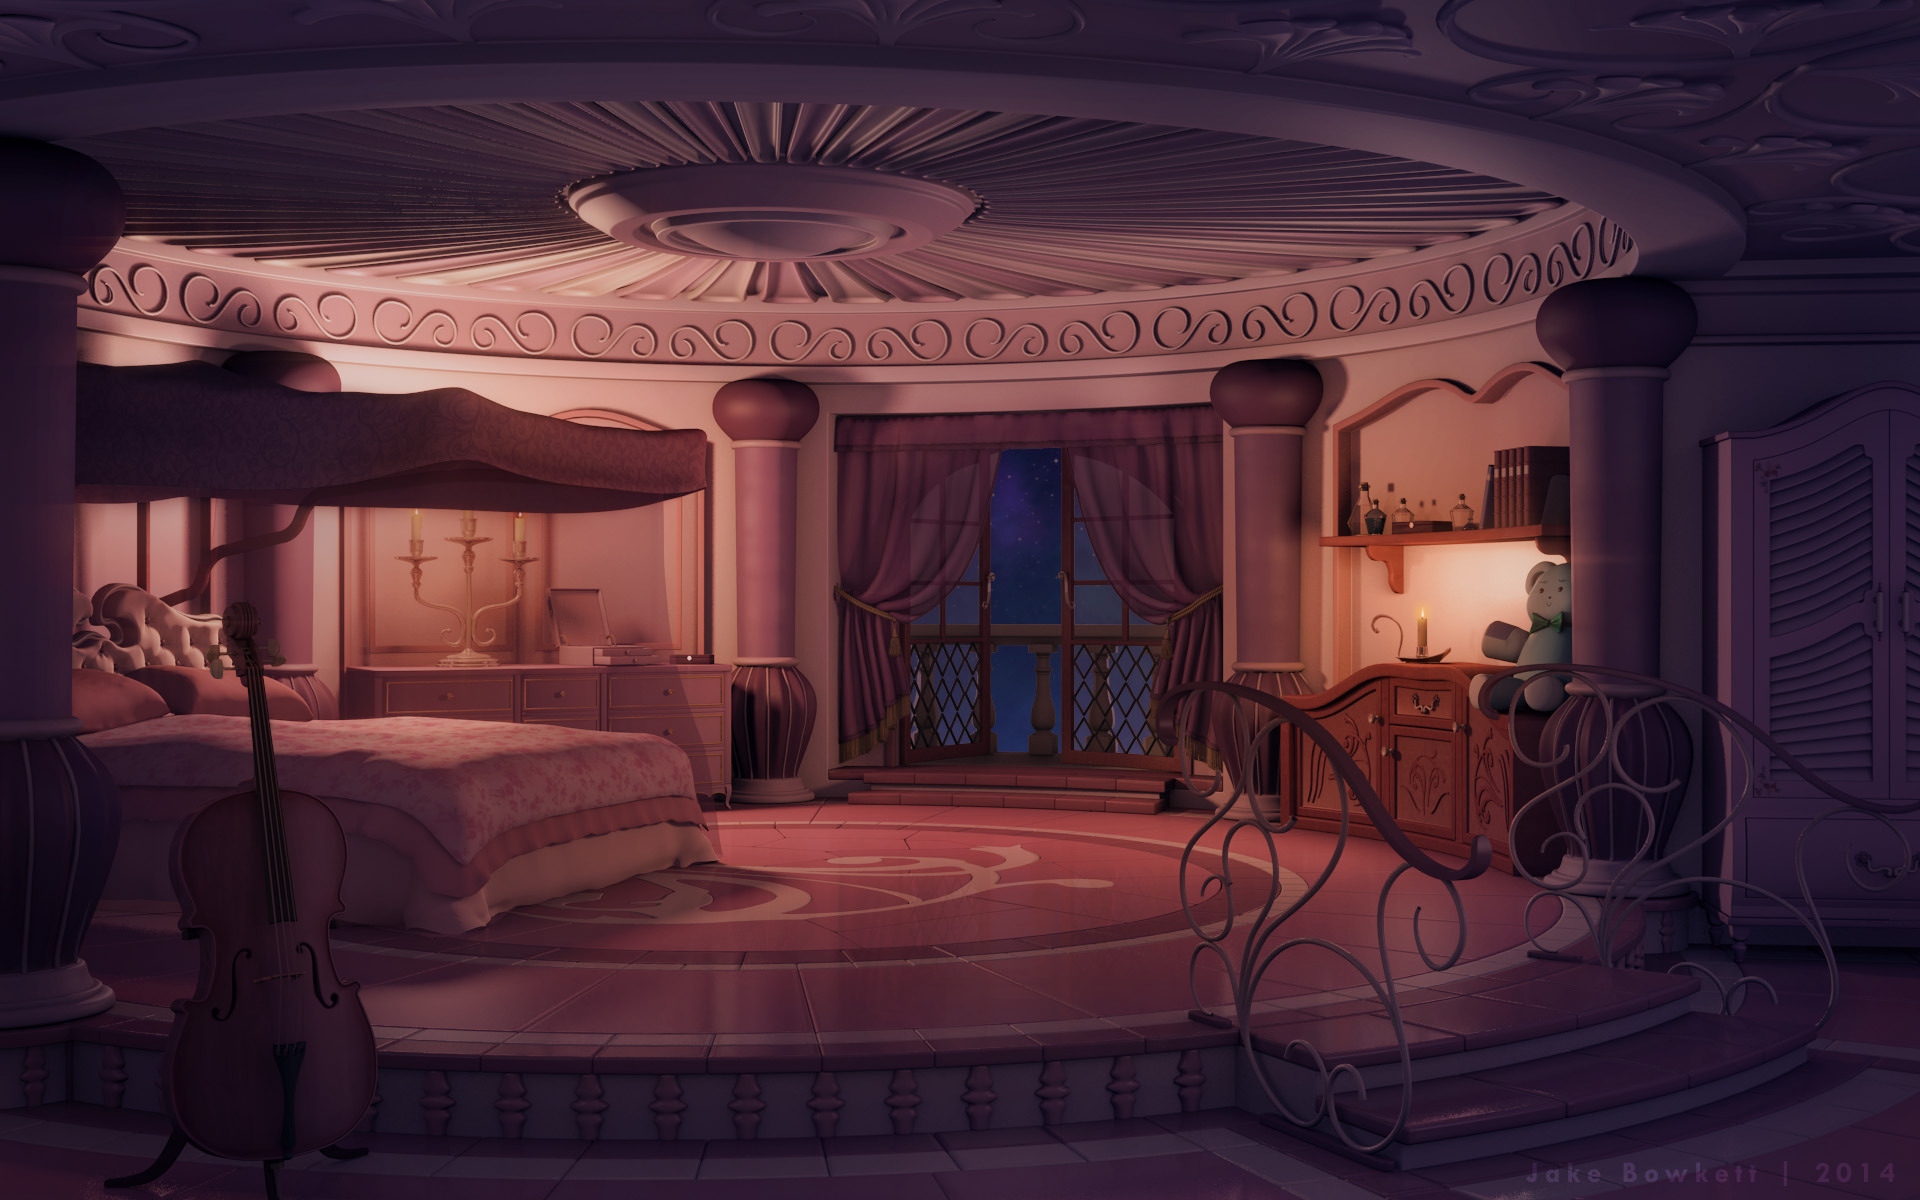 Princess's Room [night] by JakeBowkett on DeviantArt